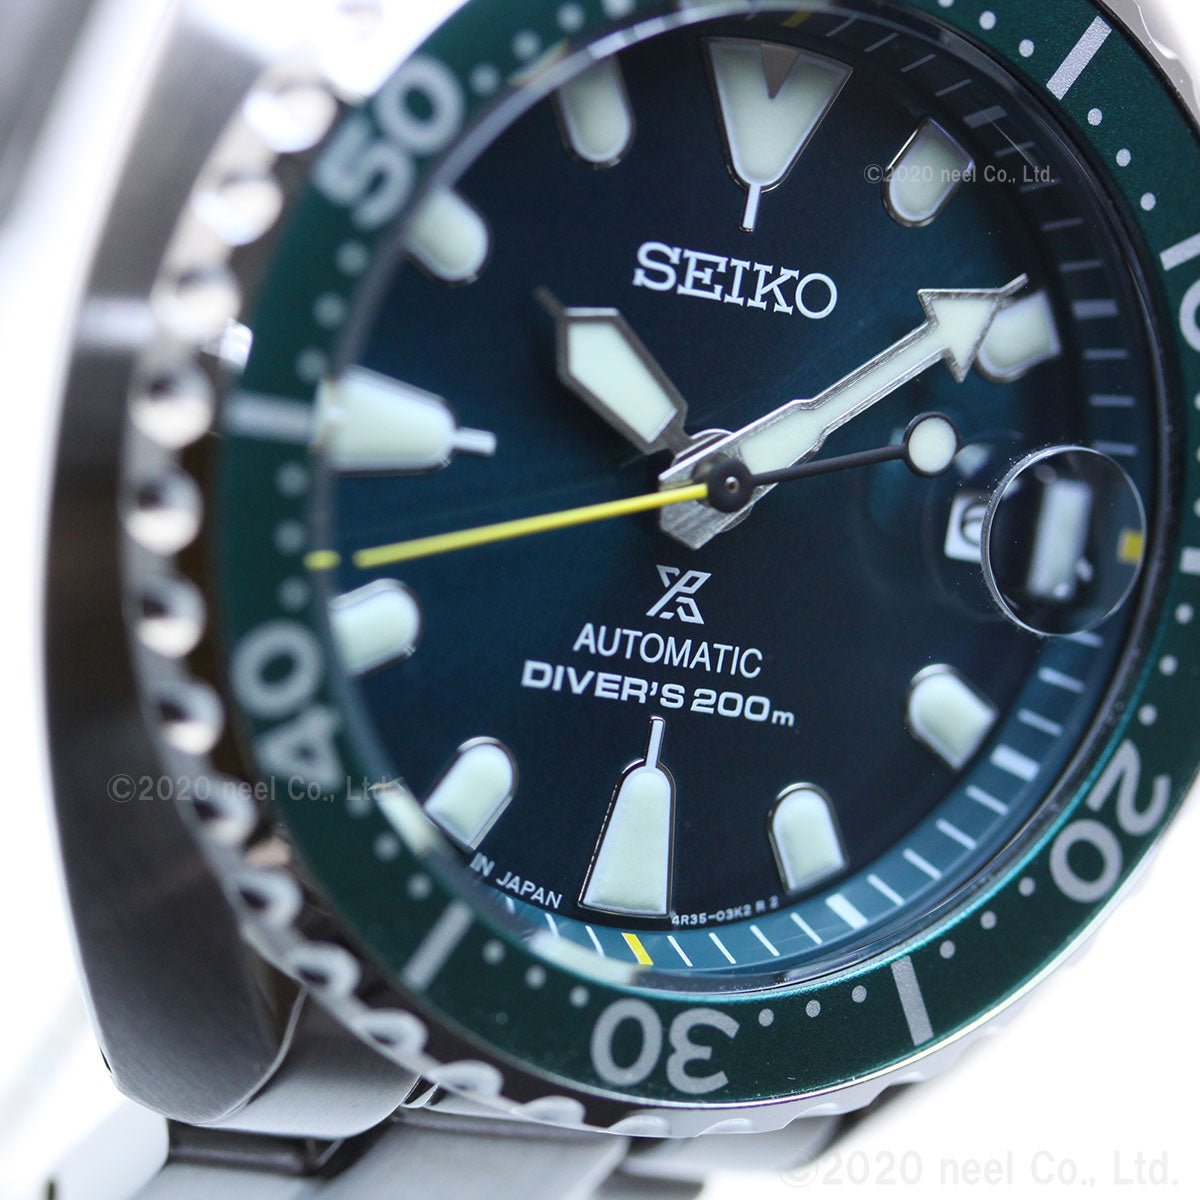 セイコー プロスペックス ミニタートル ダイバースキューバ SEIKO PROSPEX メカニカル 自動巻き ネット流通限定モデル 腕時計 メンズ SBDY083